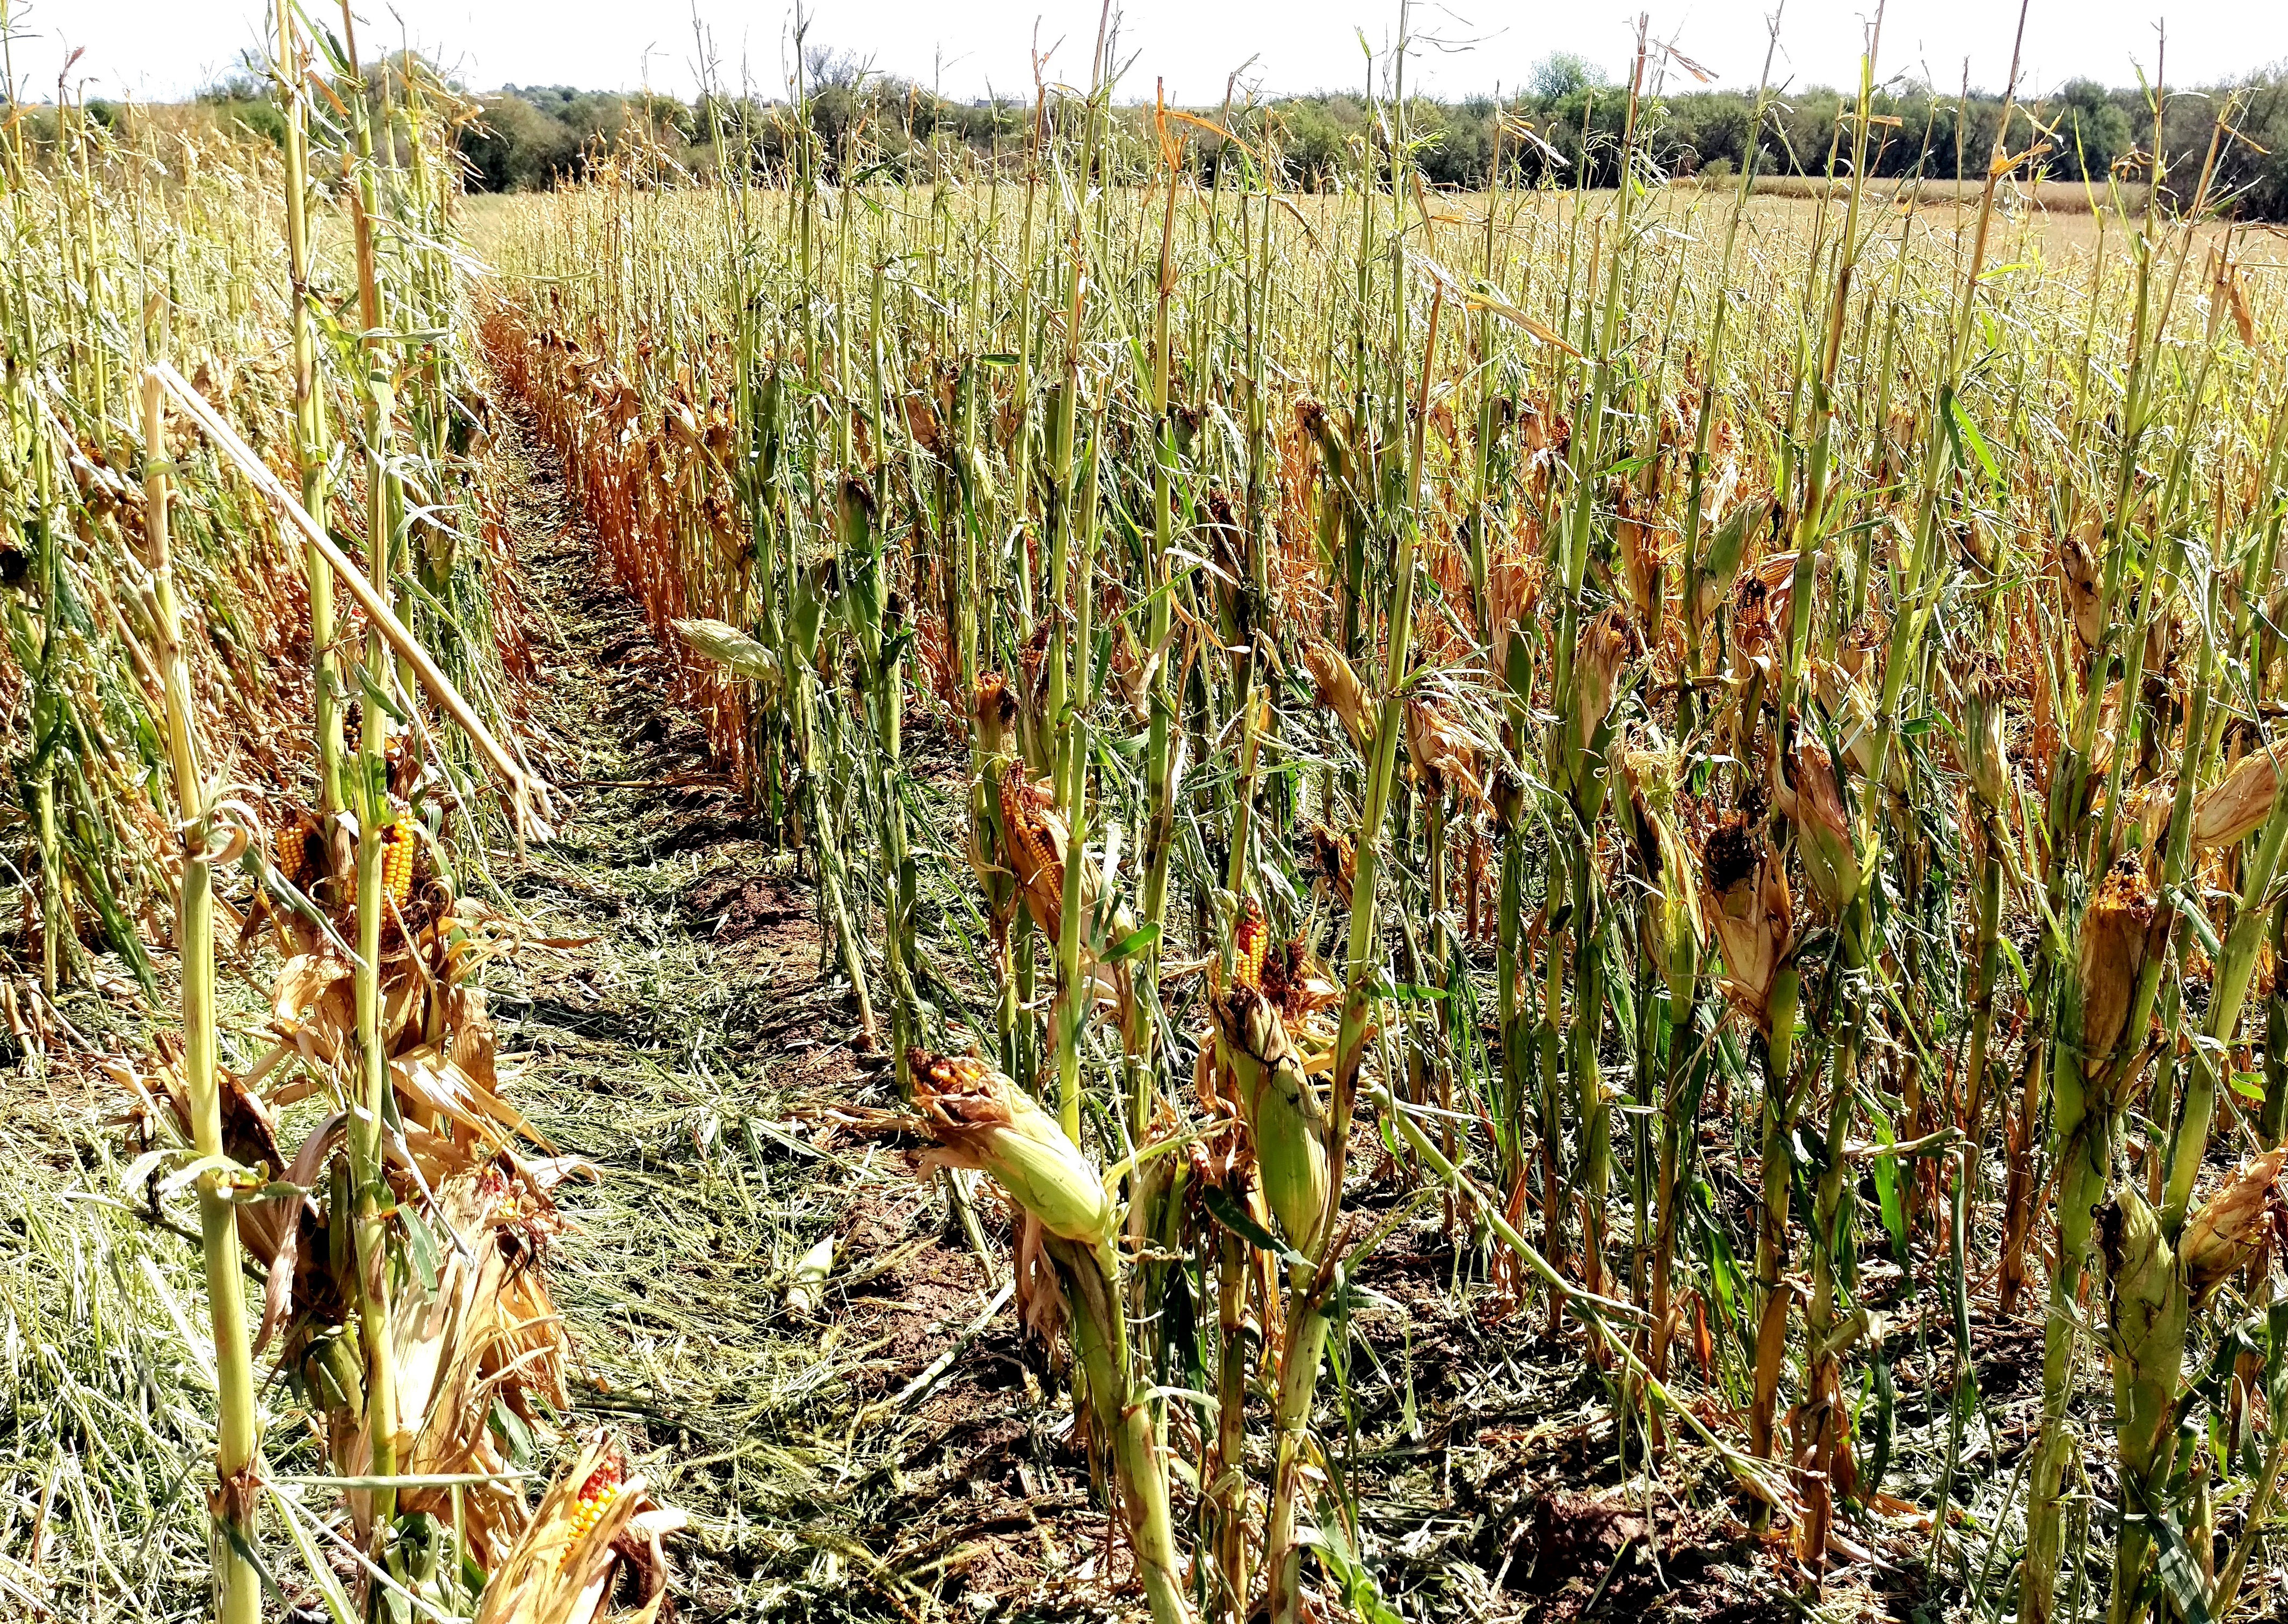 Late season hail-stripped corn